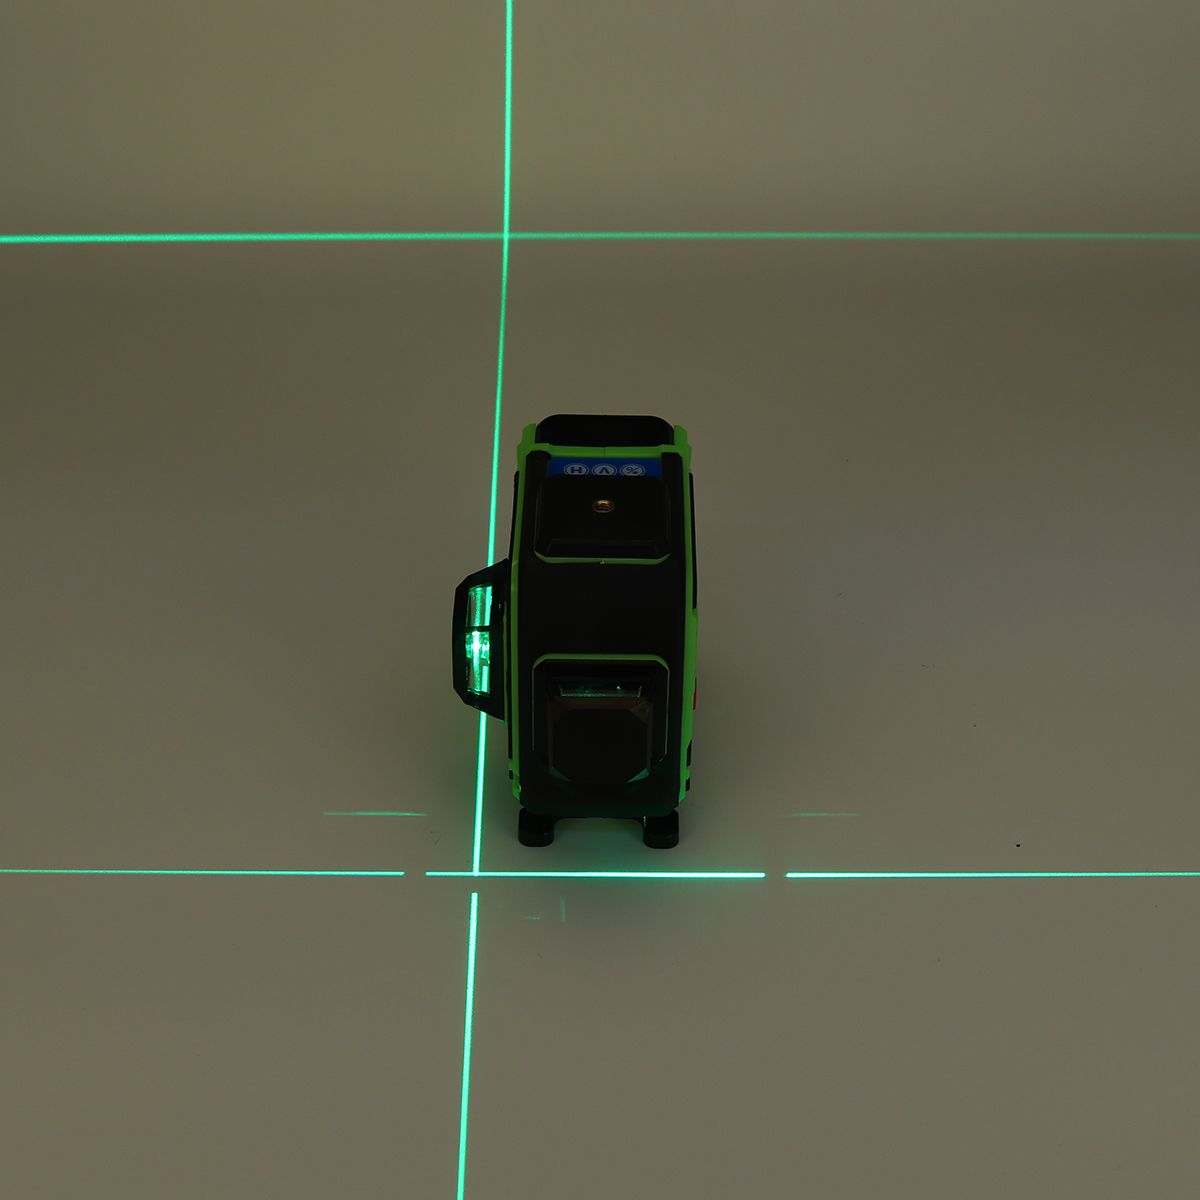 Remote-12-Lines-Green-Laser-Level-Self-Leveling-3D-360deg-Cross-Measuring-Tool-Kit-1546262